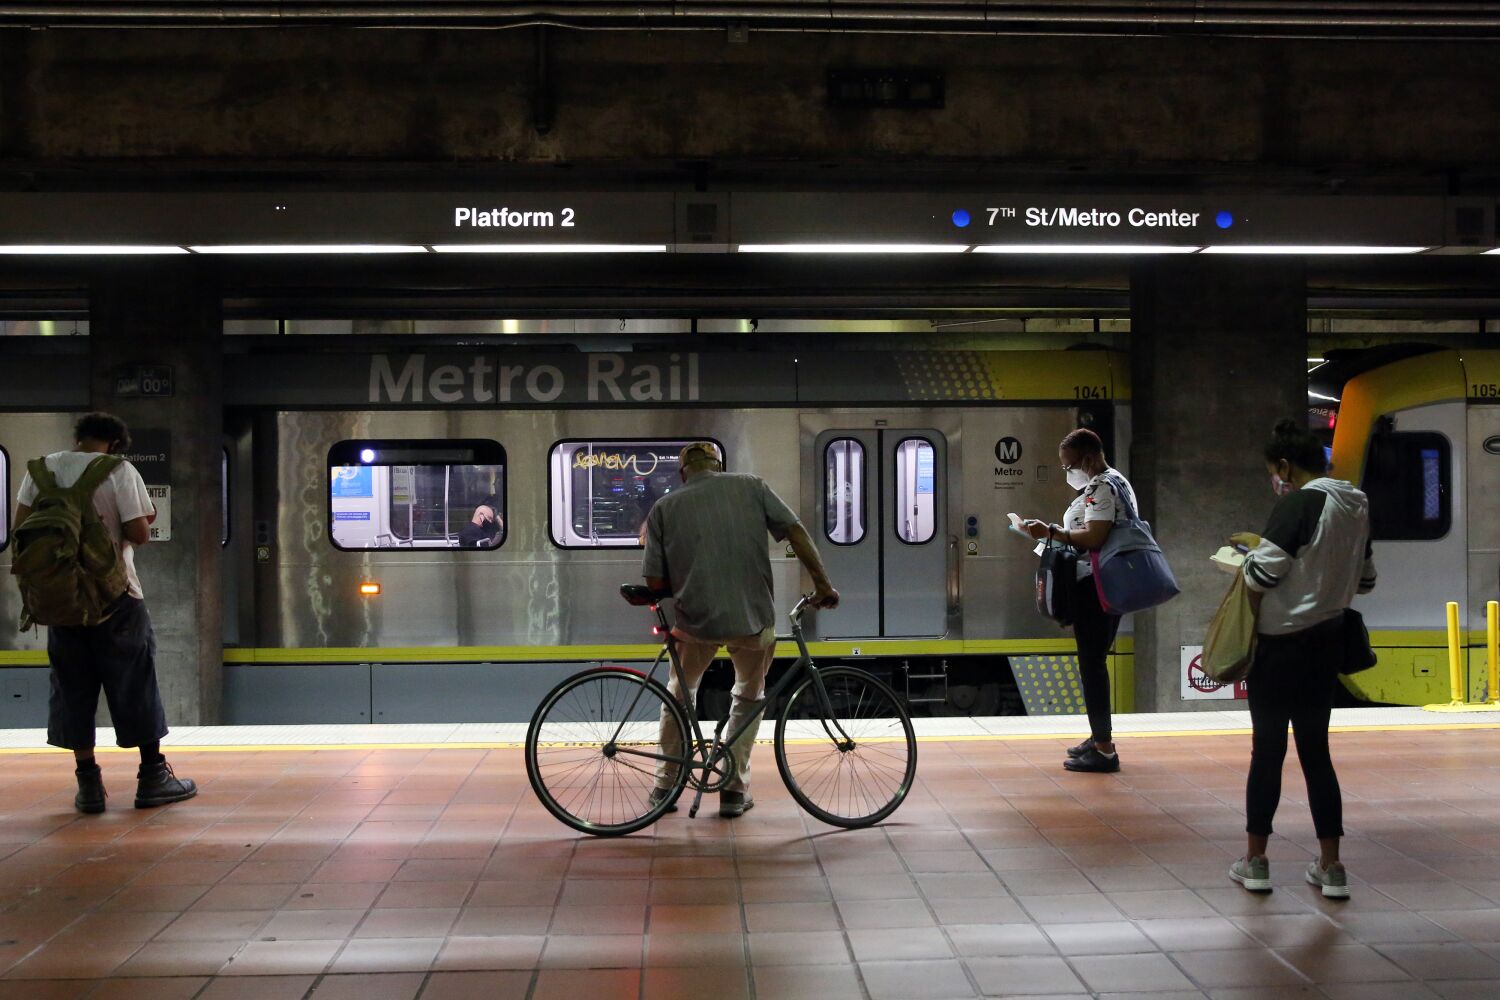 Boy meninggal setelah ditikam, ditembak di dekat stasiun Metro Los Angeles